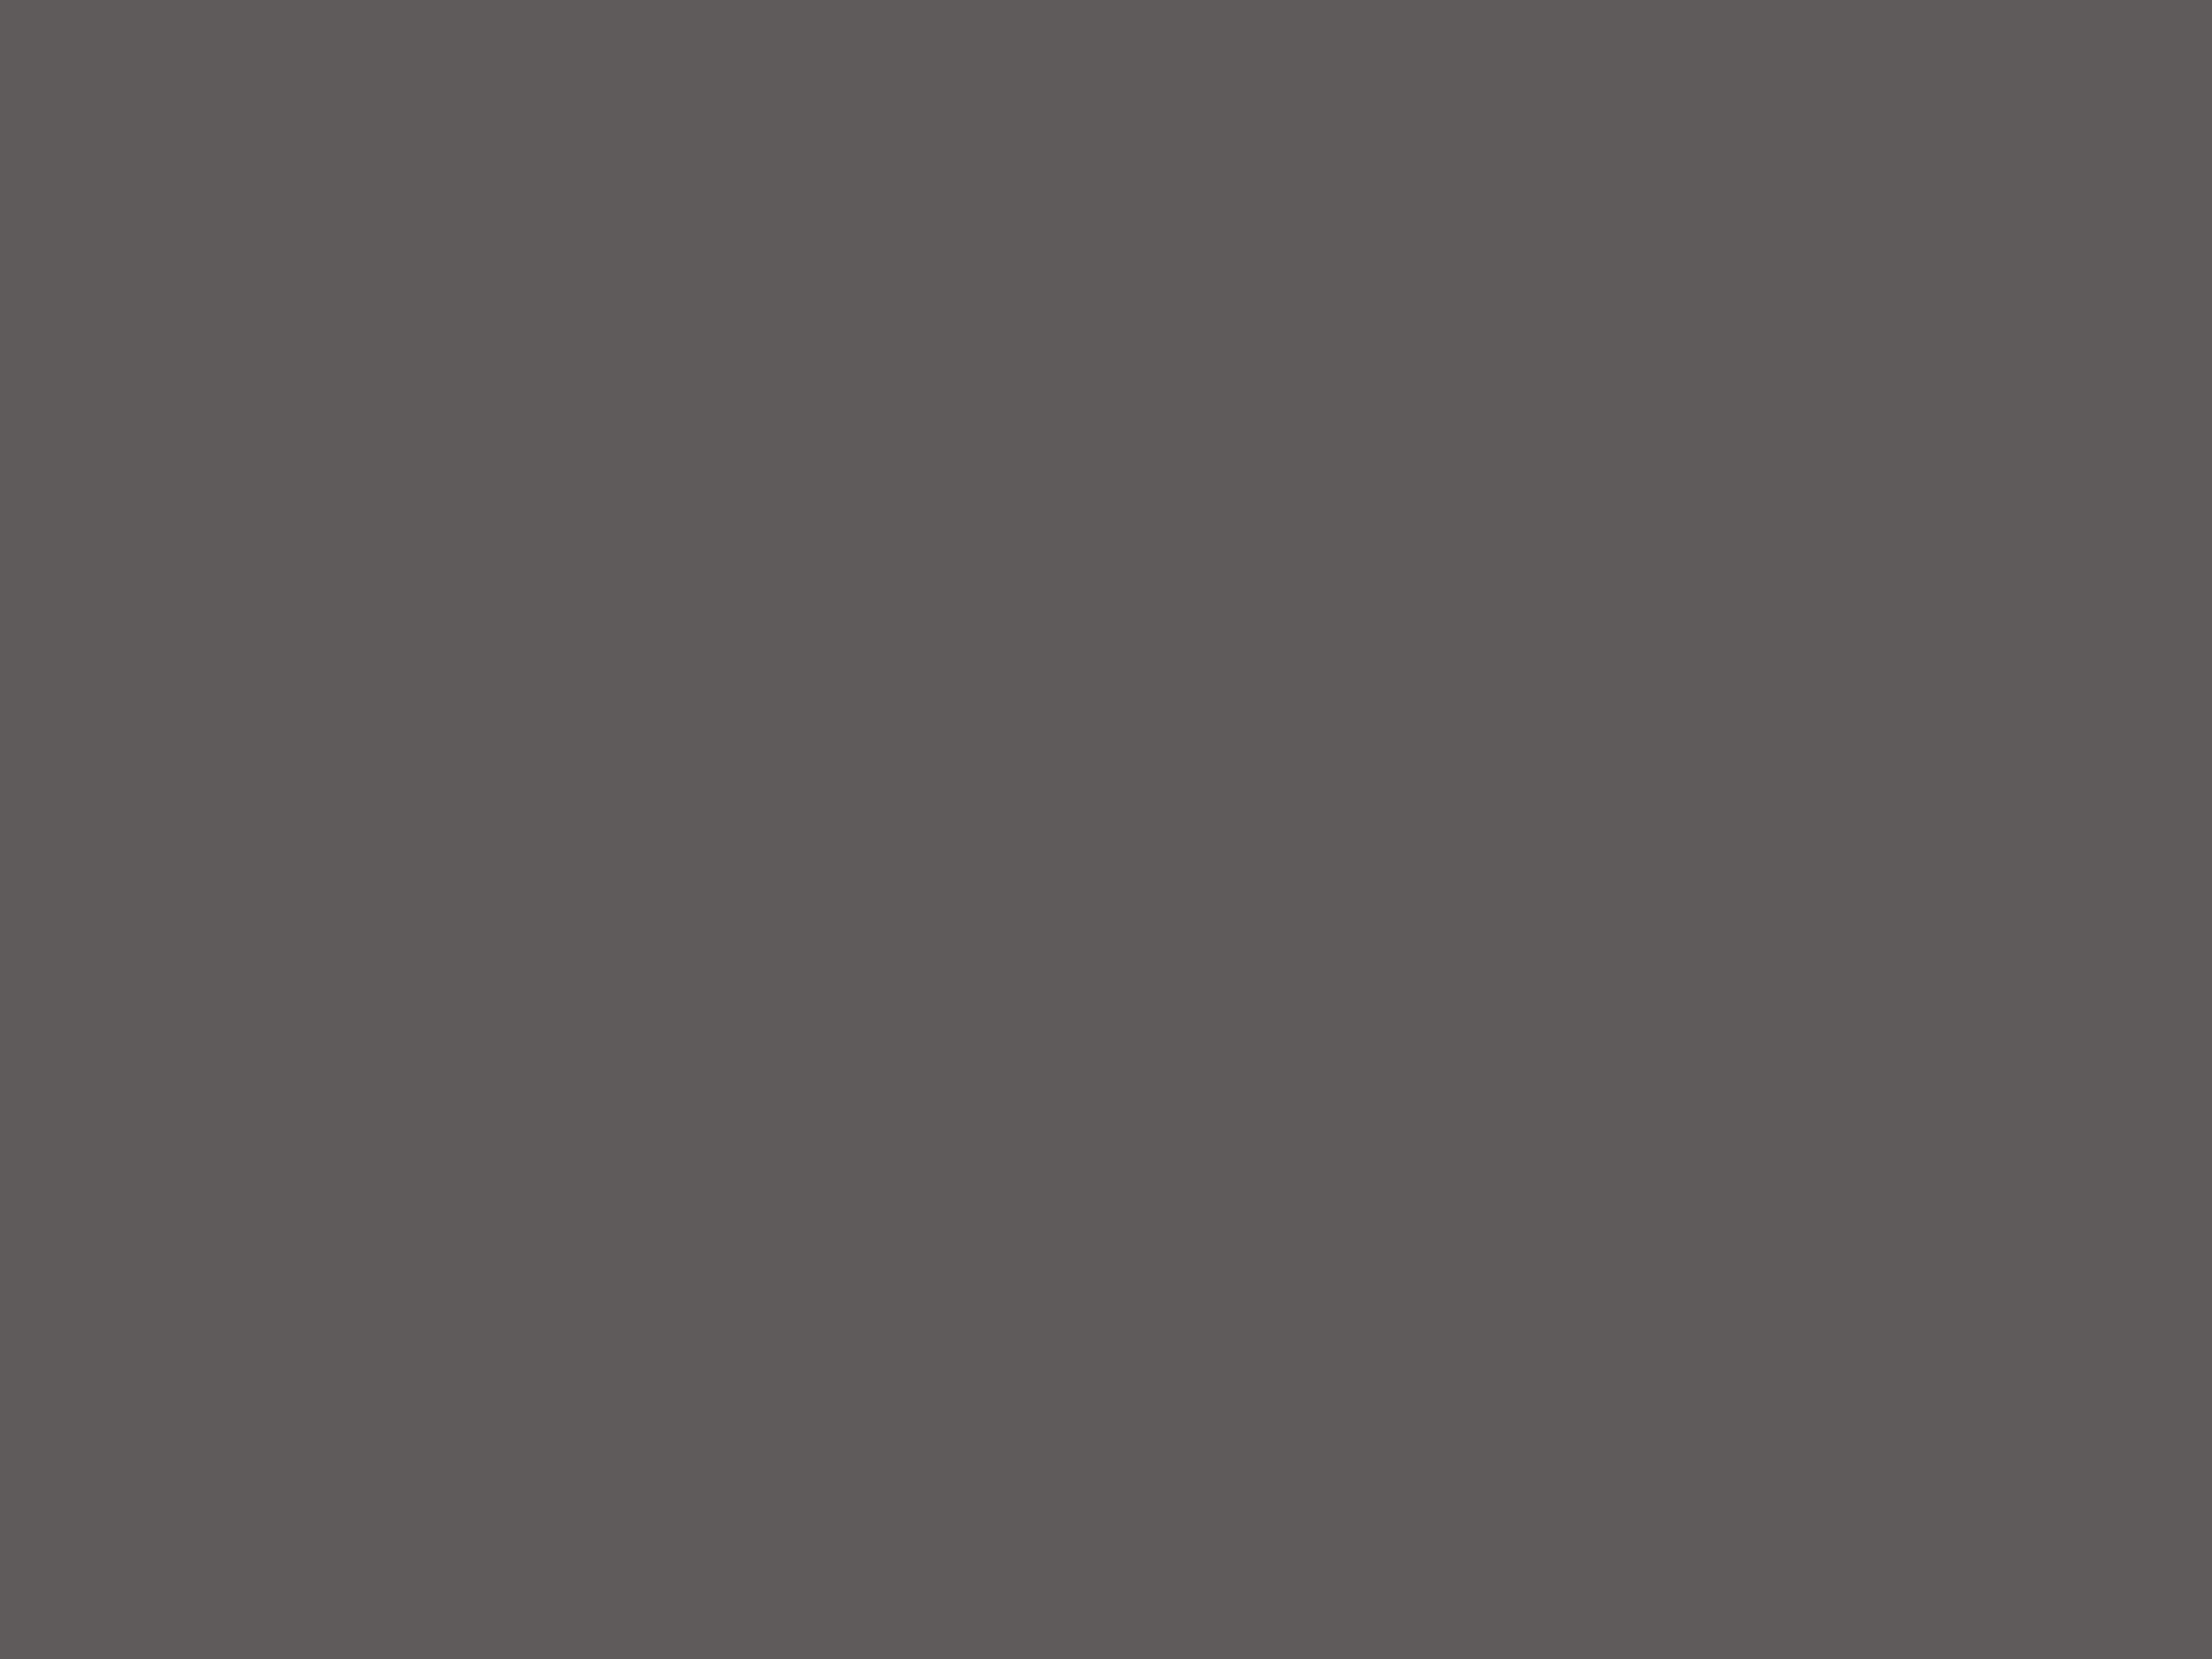 Исследовательский лист из проекта «Воображаемый музей Михаила Шемякина. Лестница в искусстве». Новая Третьяковка, Москва